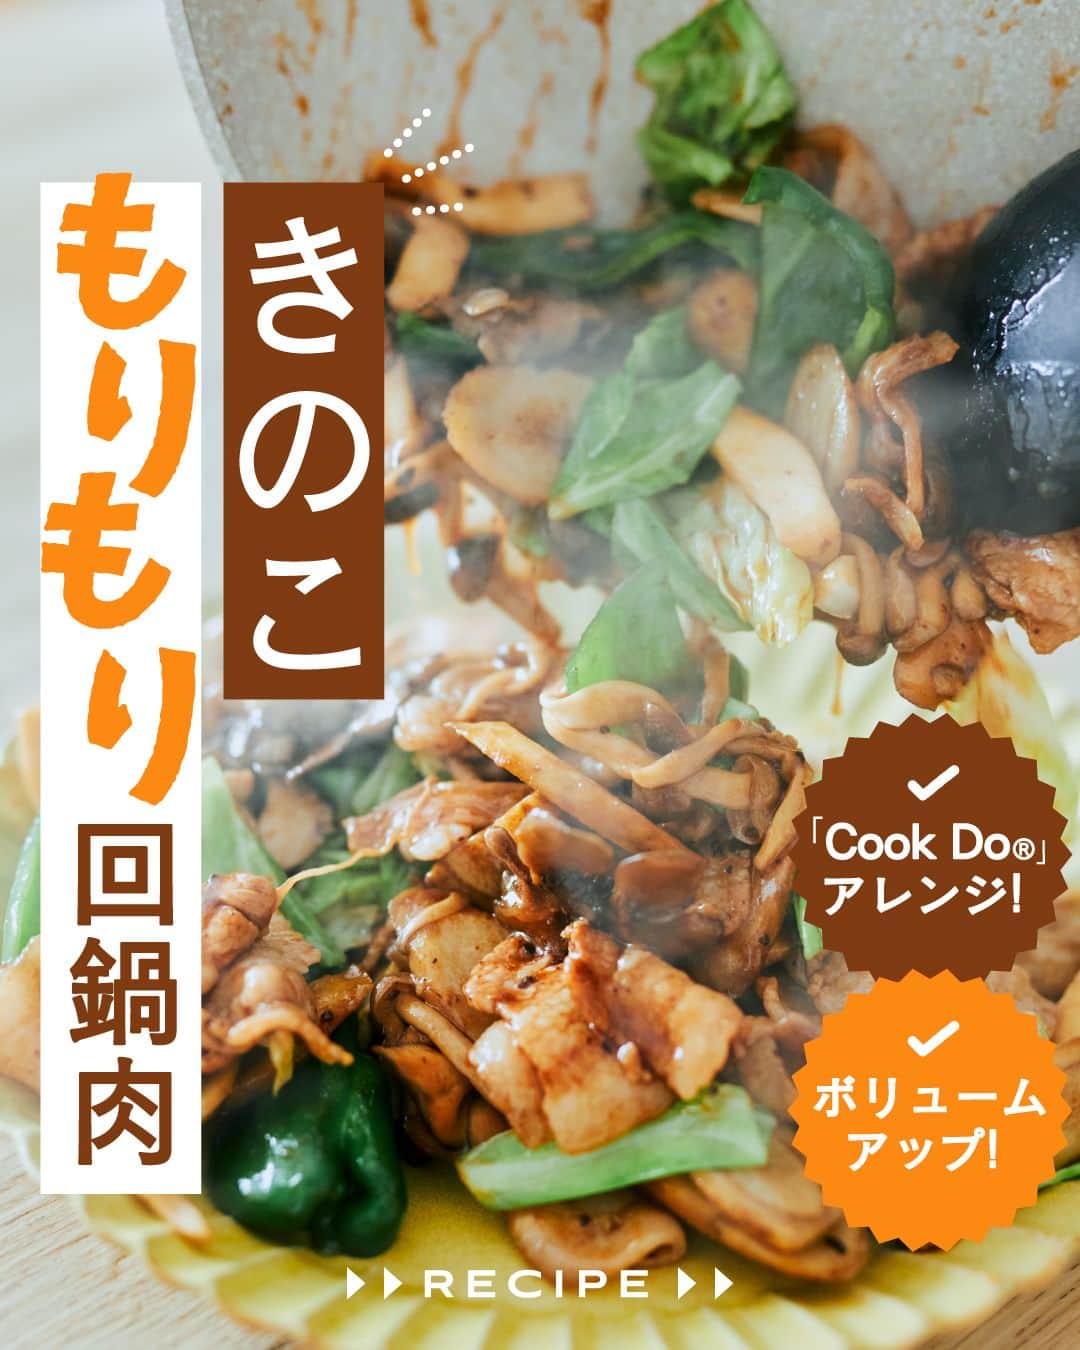 cooking_ajinomotoのインスタグラム：「作ってみたいと思ったら【❤️】の絵文字でコメントしてくださいね。  アンケートのご協力ありがとうございました！ みなさまのお声をうけ、人気のきのこを使ったレシピをご紹介します。  ✔️きのこもりもり回鍋肉：⏱20分 きのこやごぼうなど、回鍋肉に秋の味覚をプラスした ボリューム満点のアレンジレシピです。  詳しいレシピは、スワイプして2枚目以降の画像をCHECK🔎 保存ボタンをタップして、ぜひ作ってみてくださいね。  *** たべる楽しさを、もっと 作る楽しさを、もっと 「AJINOMOTO PARK」 インスタグラムでは いつも生活の中心にある “食”を通じて毎日を明るく 楽しくするレシピを投稿しています🍳 ***  #味の素パークレシピ #ajinomotopark #おいしいねは笑顔の素 #アレンジレシピ #節約レシピ #ボリューム満点  #クックドゥ #cookdo #回鍋肉  #きゃべつ #きゃべつレシピ #きゃべつ料理 #豚肉 #豚肉レシピ #豚肉料理 #きのこ #きのこレシピ #きのこ料理 #今夜のごはん #今夜のメニュー #今晩のおかず #定番メニュー #秋レシピ #秋の味覚 #秋の食材  #旬の味覚 #旬の食材 #レシピあり #レシピ付き #レシピ公開」